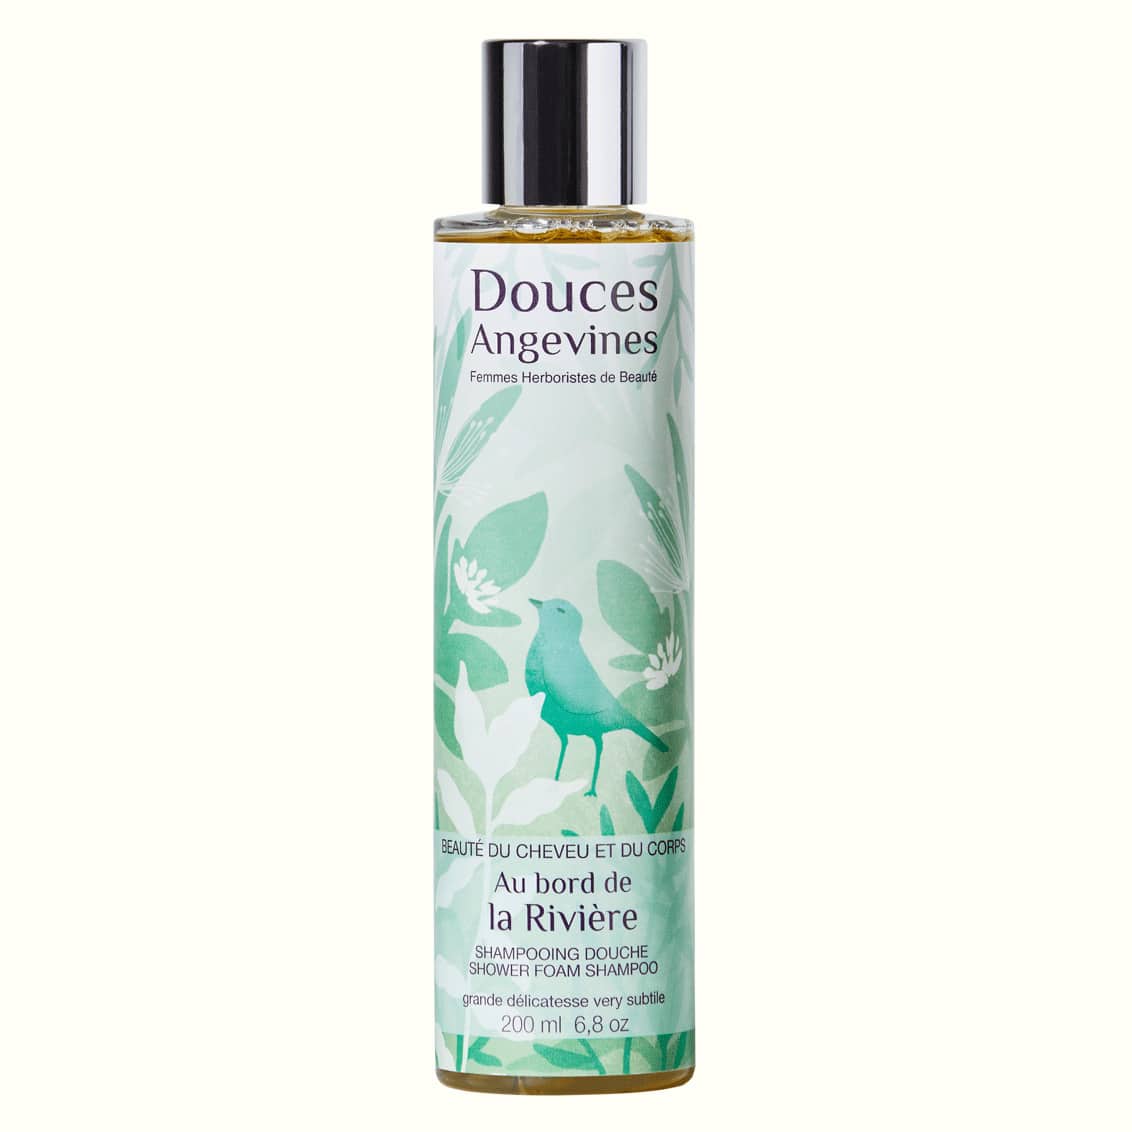 Au Bord de la Rivière gentle botanical shower shampoo - Douces Angevines